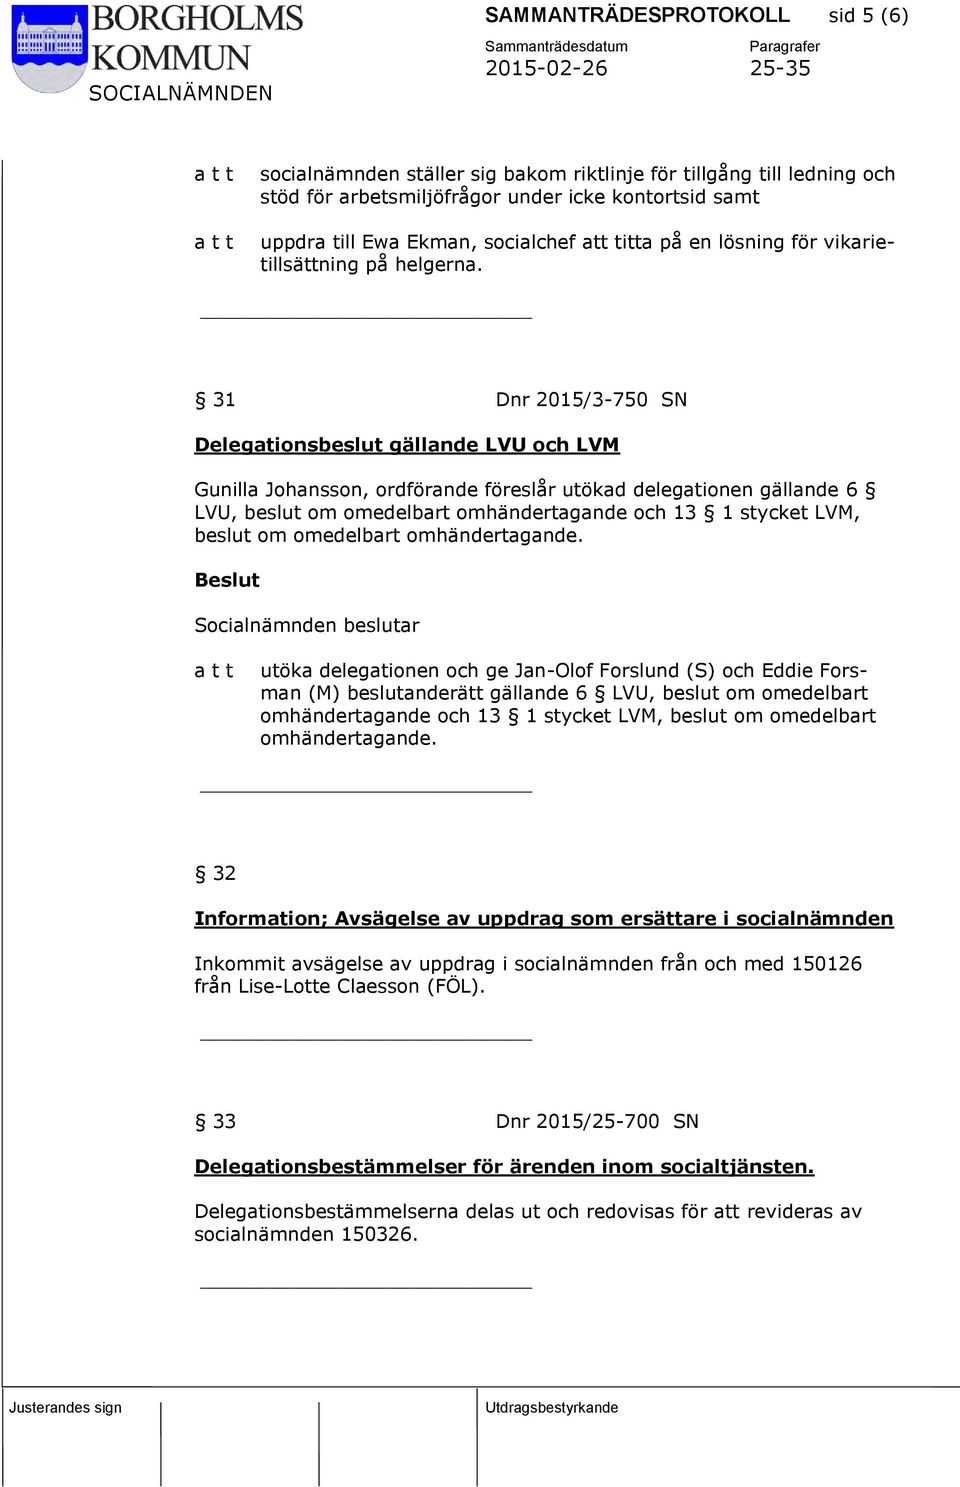 31 Dnr 2015/3-750 SN Delegationsbeslut gällande LVU och LVM Gunilla Johansson, ordförande föreslår utökad delegationen gällande 6 LVU, beslut om omedelbart omhändertagande och 13 1 stycket LVM,